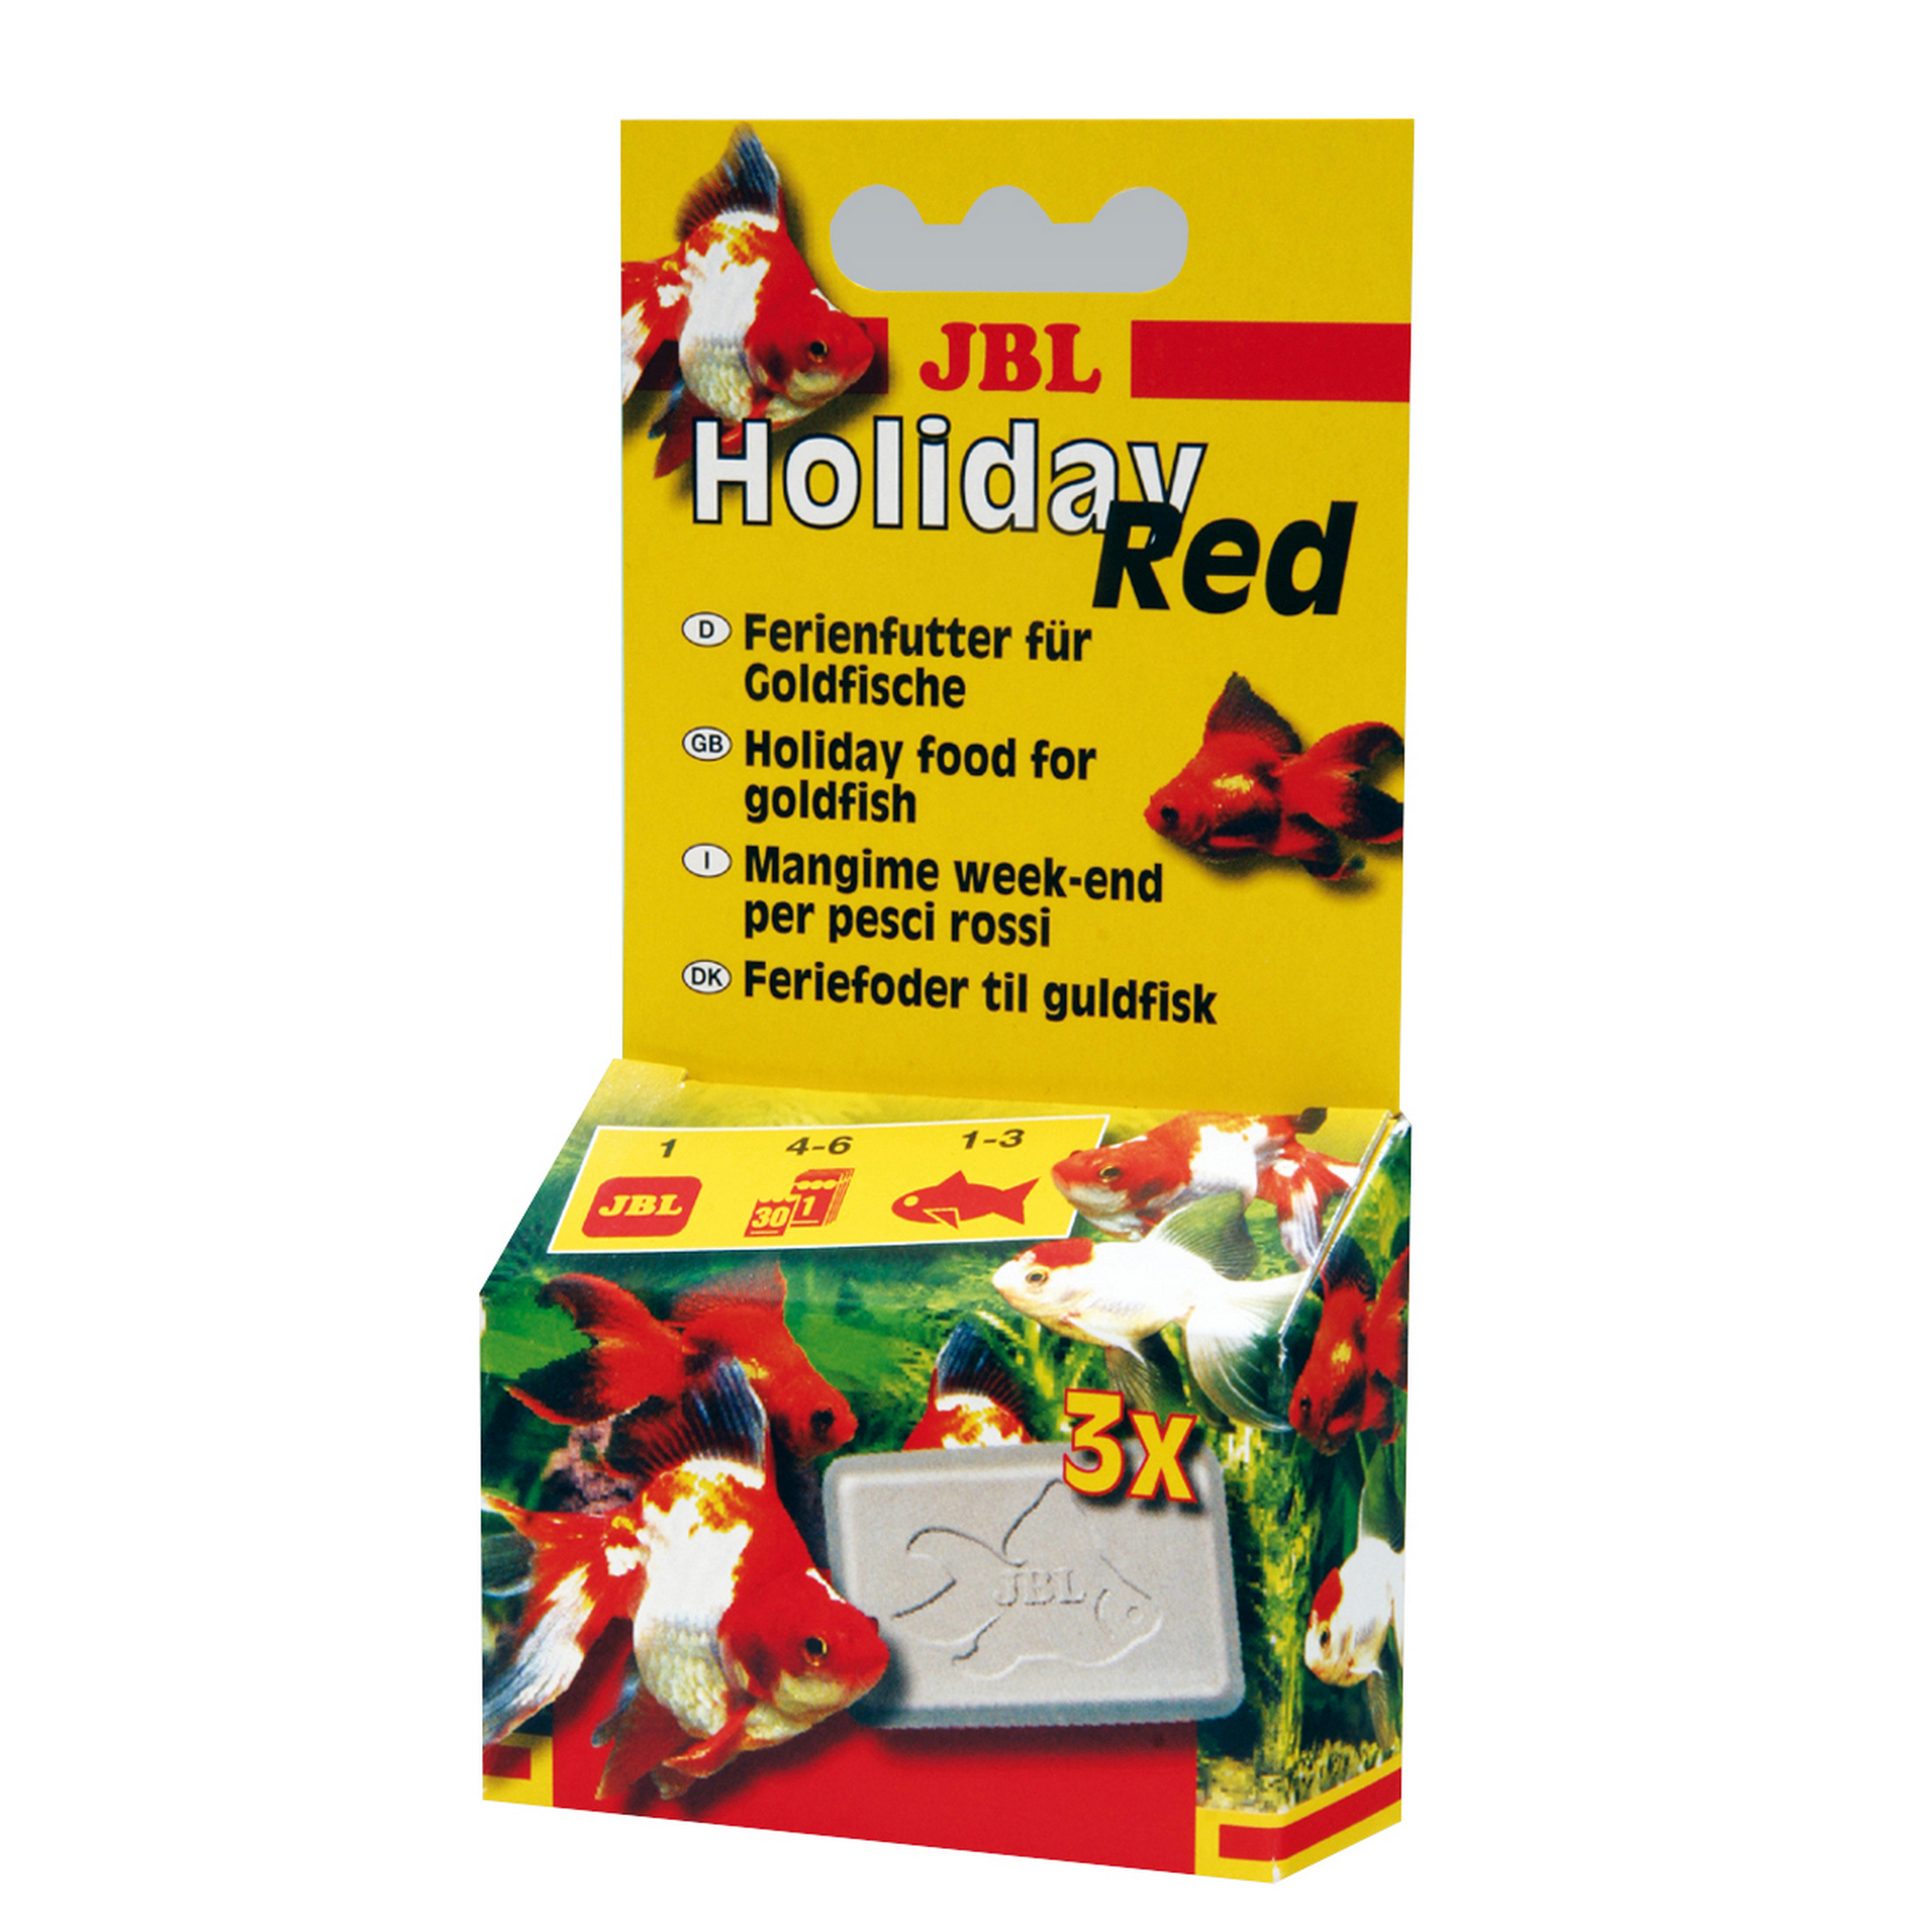 Holiday Red Ferienfutter für Goldfische 3 Stück + product picture